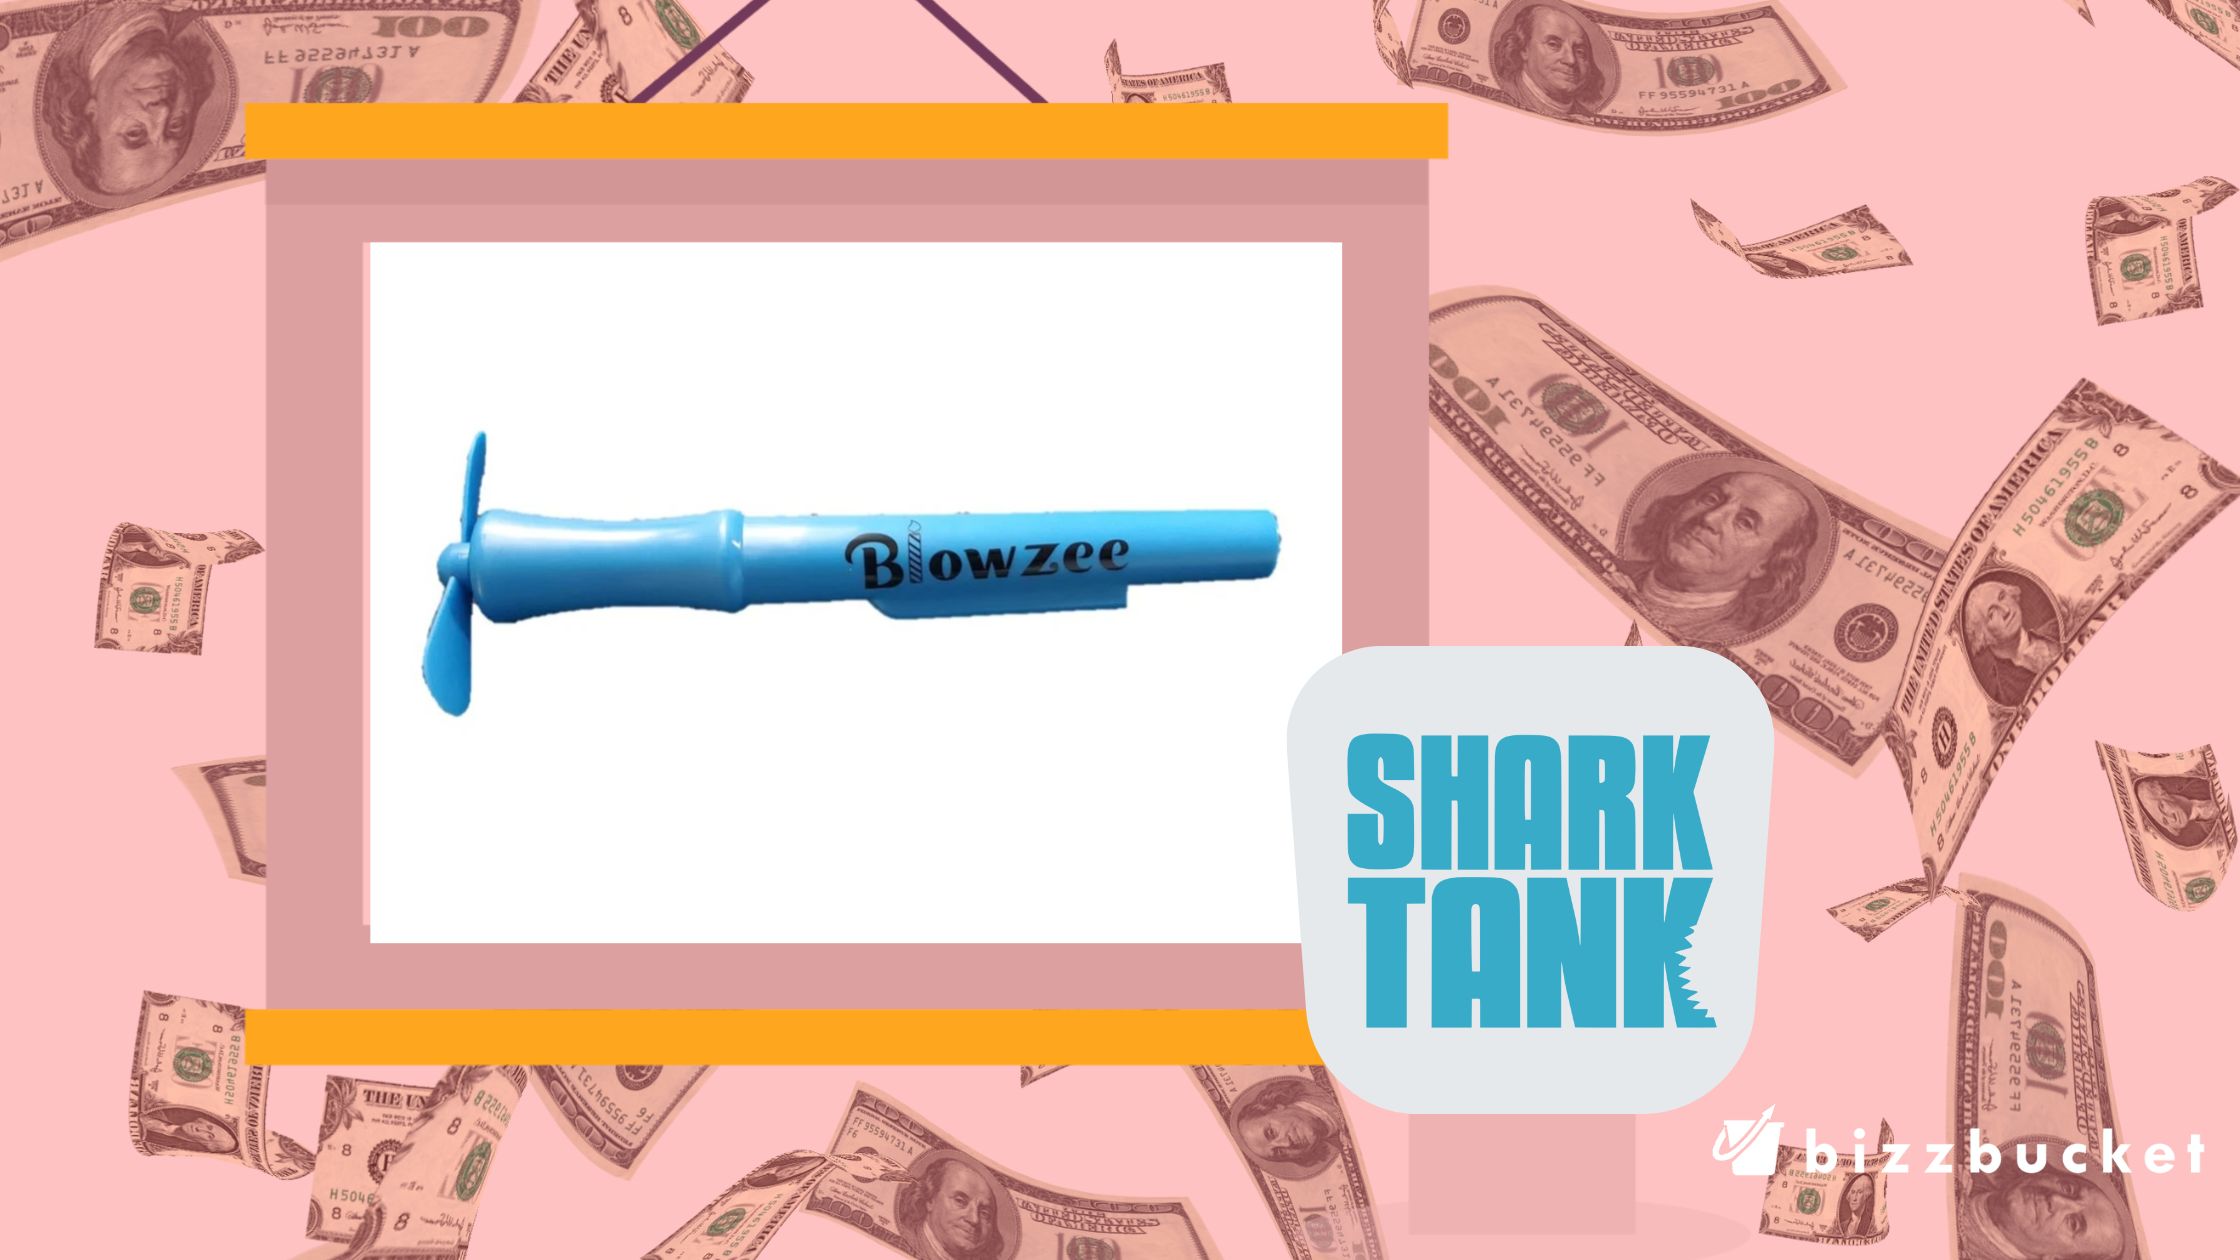 The Blowzee shark tank update